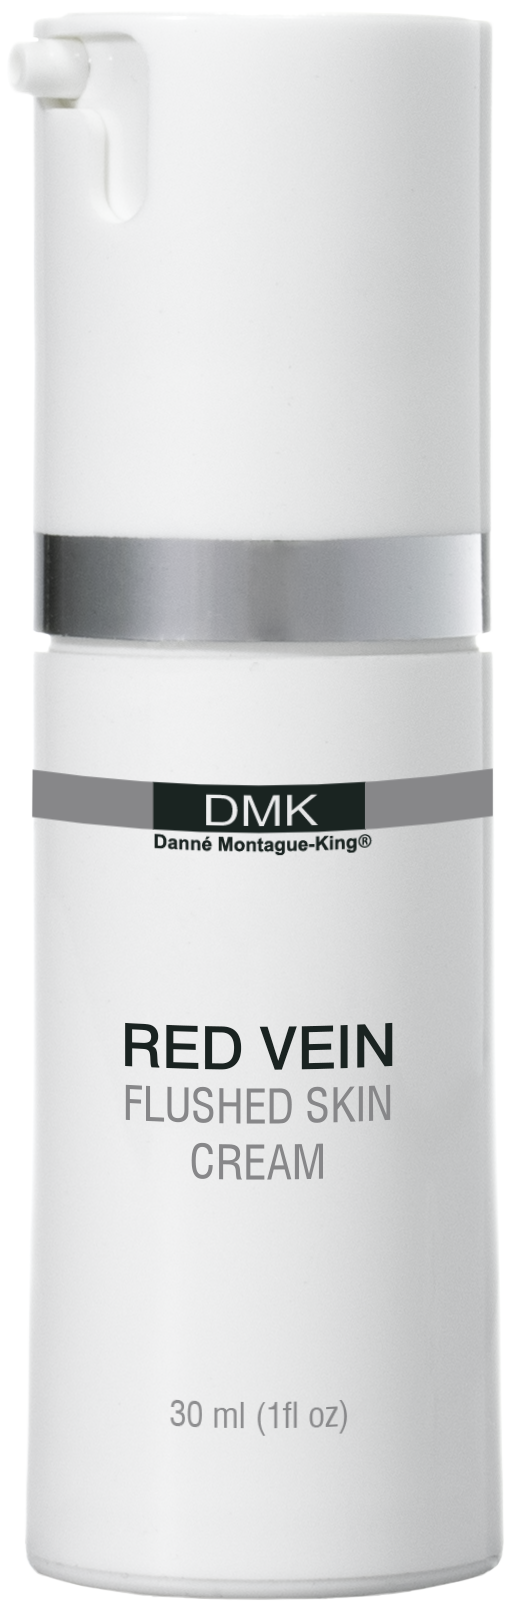 DMK Red Vein - Satori Fiori Skin Care